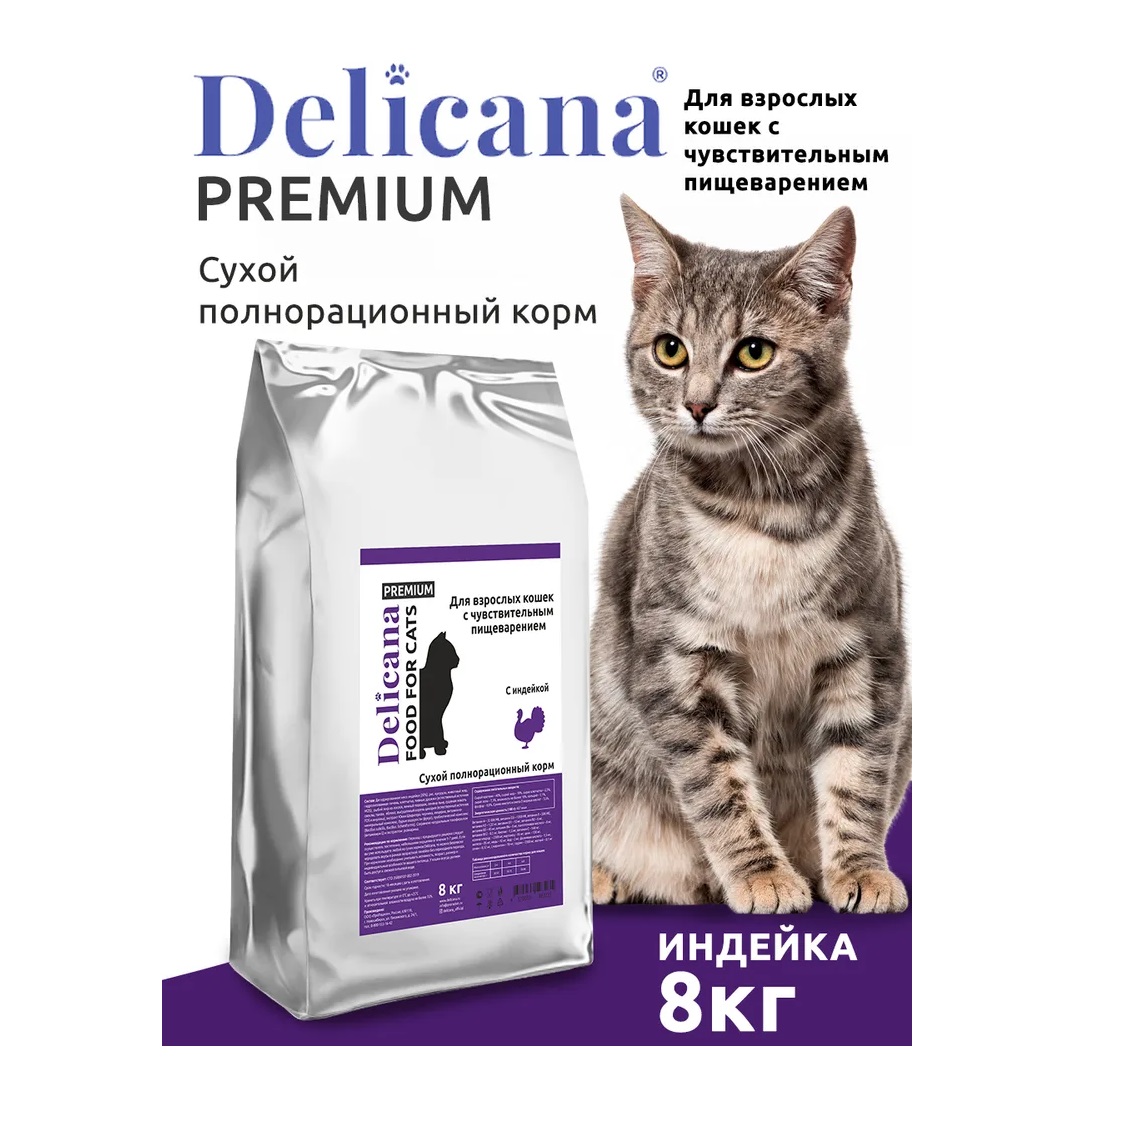 Деликана 8кг для кошек с Чувствительным пищеварением - Индейка (Delicana)